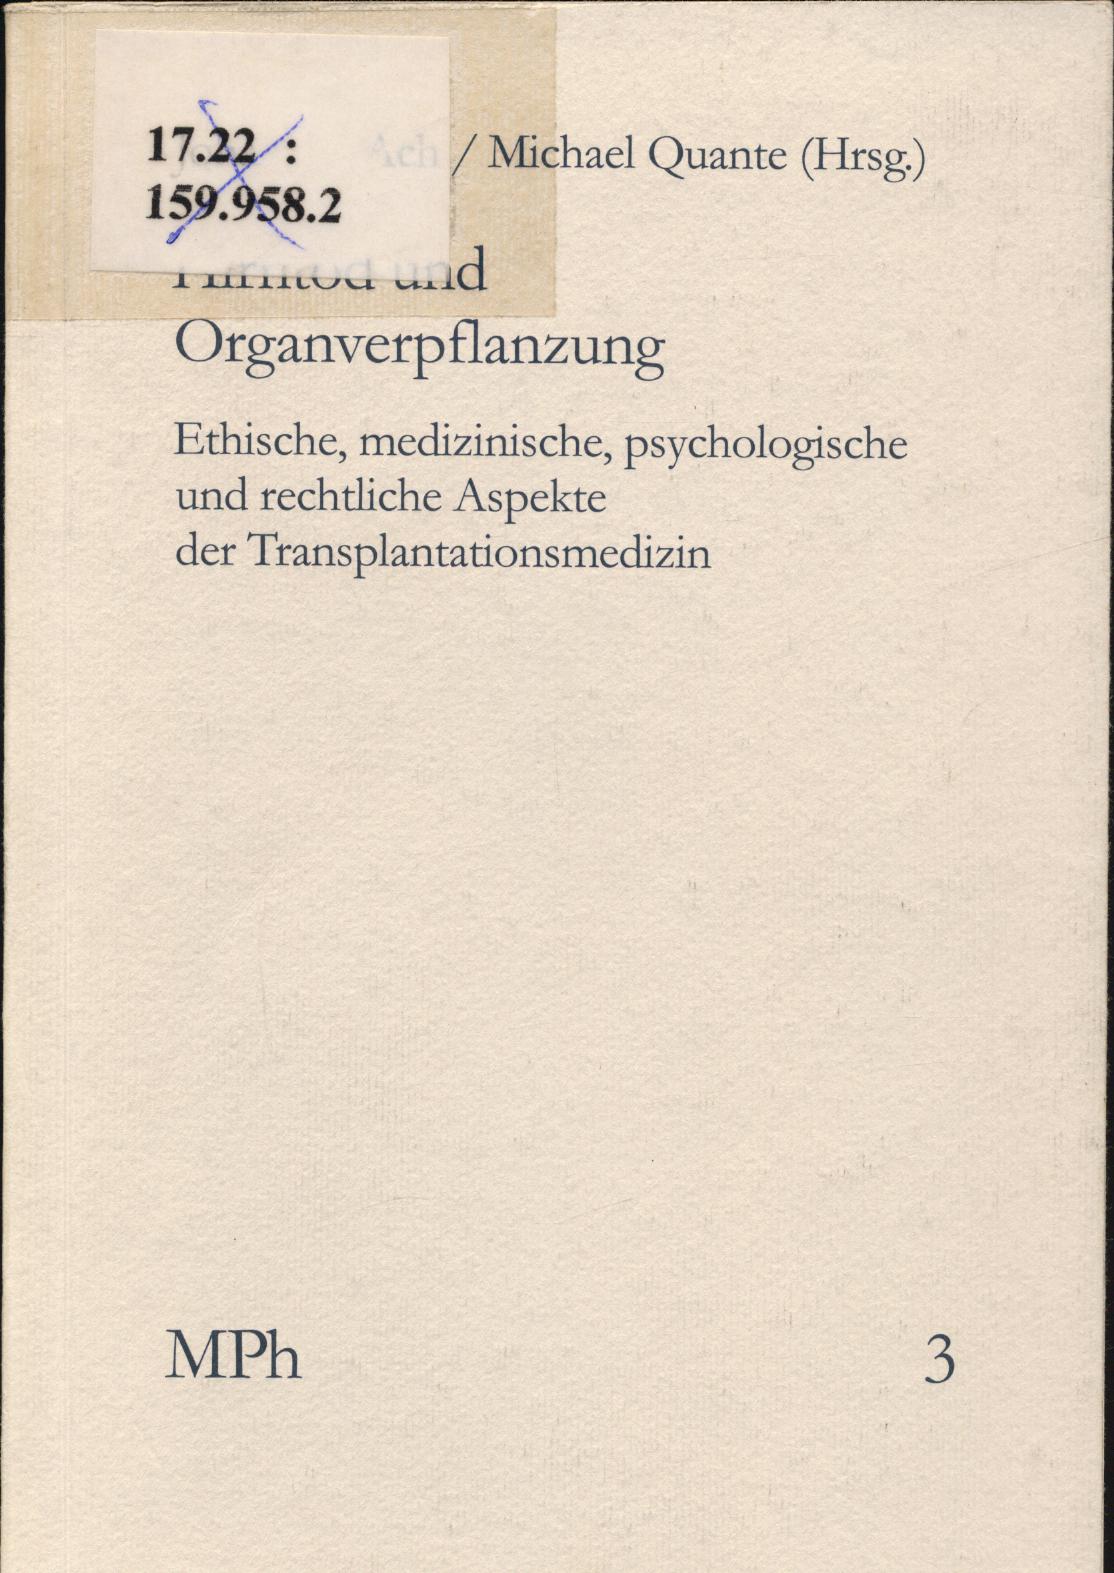 Hirntod und Organverpflanzung Ethische, medizinische, psychologische und rechtliche Aspekte der Transplantationsmedizin - Ach, Johann S. und Michael Quante